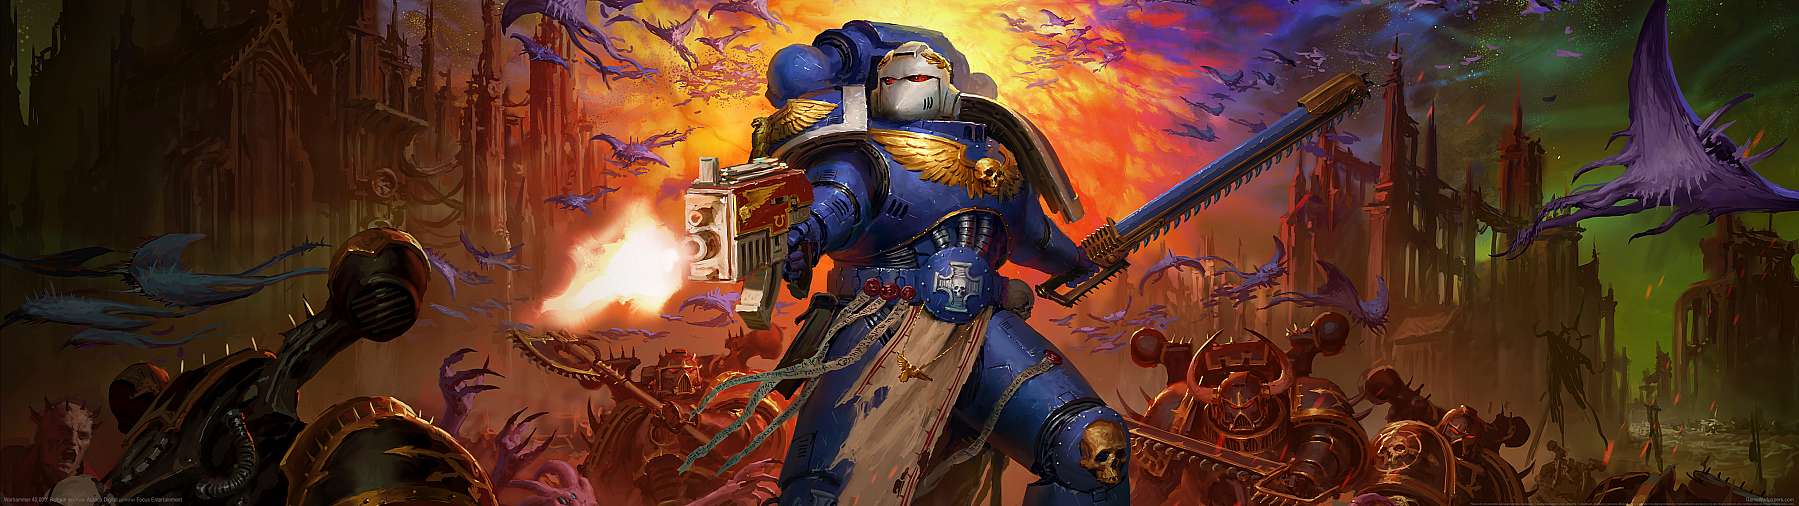 Warhammer 40,000: Boltgun wallpaper or background